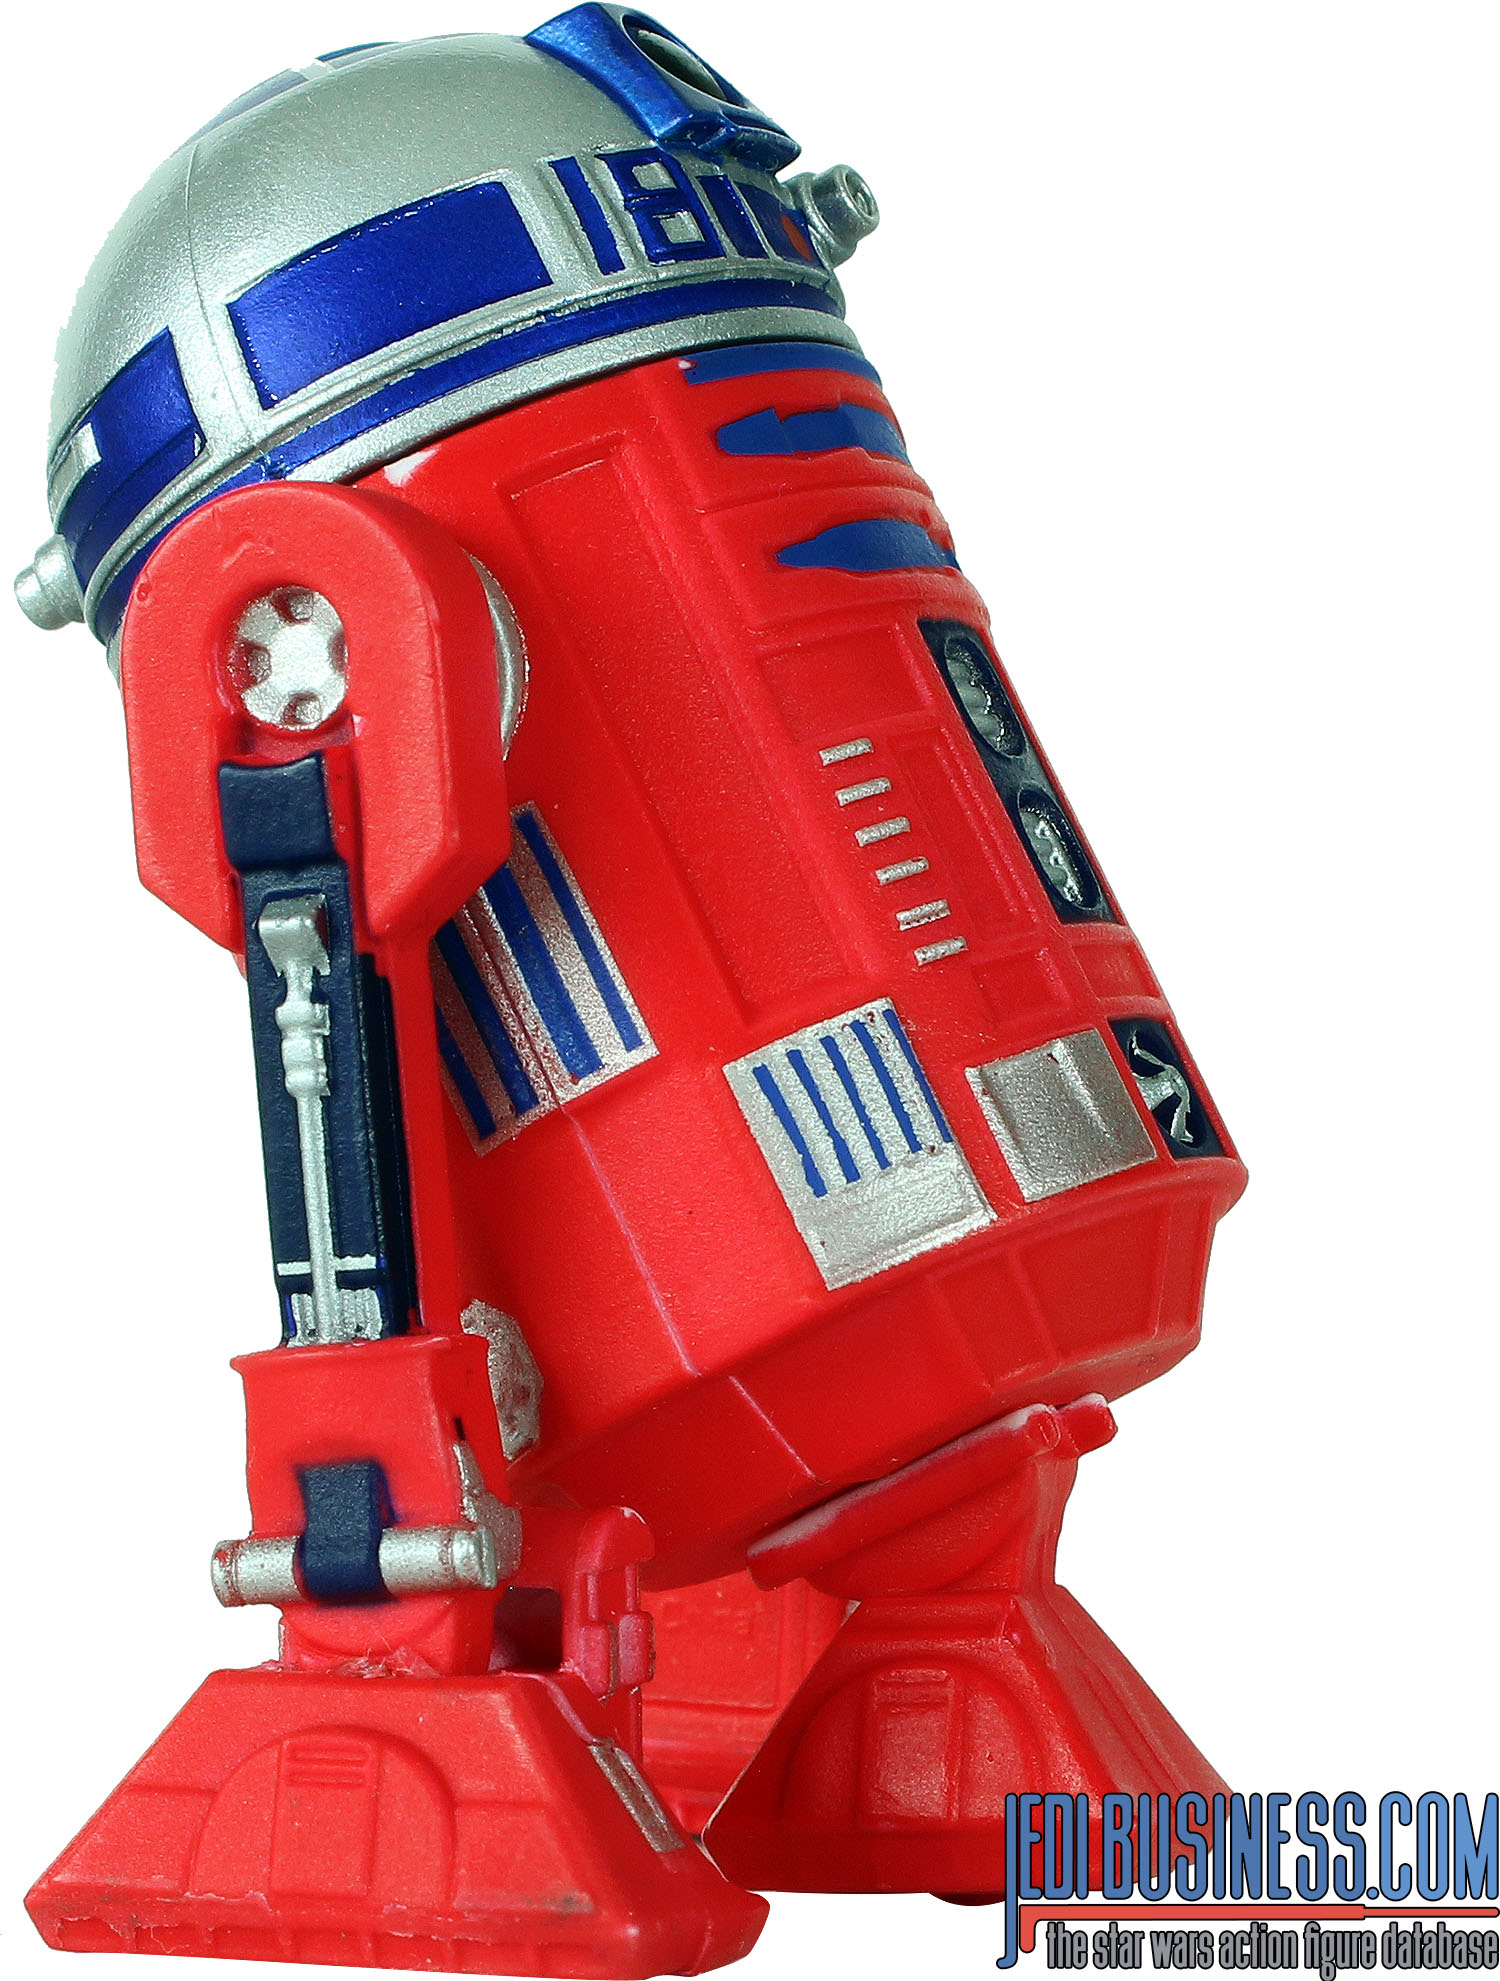 R2-Unit Color-Changing Droid 4-Pack #1